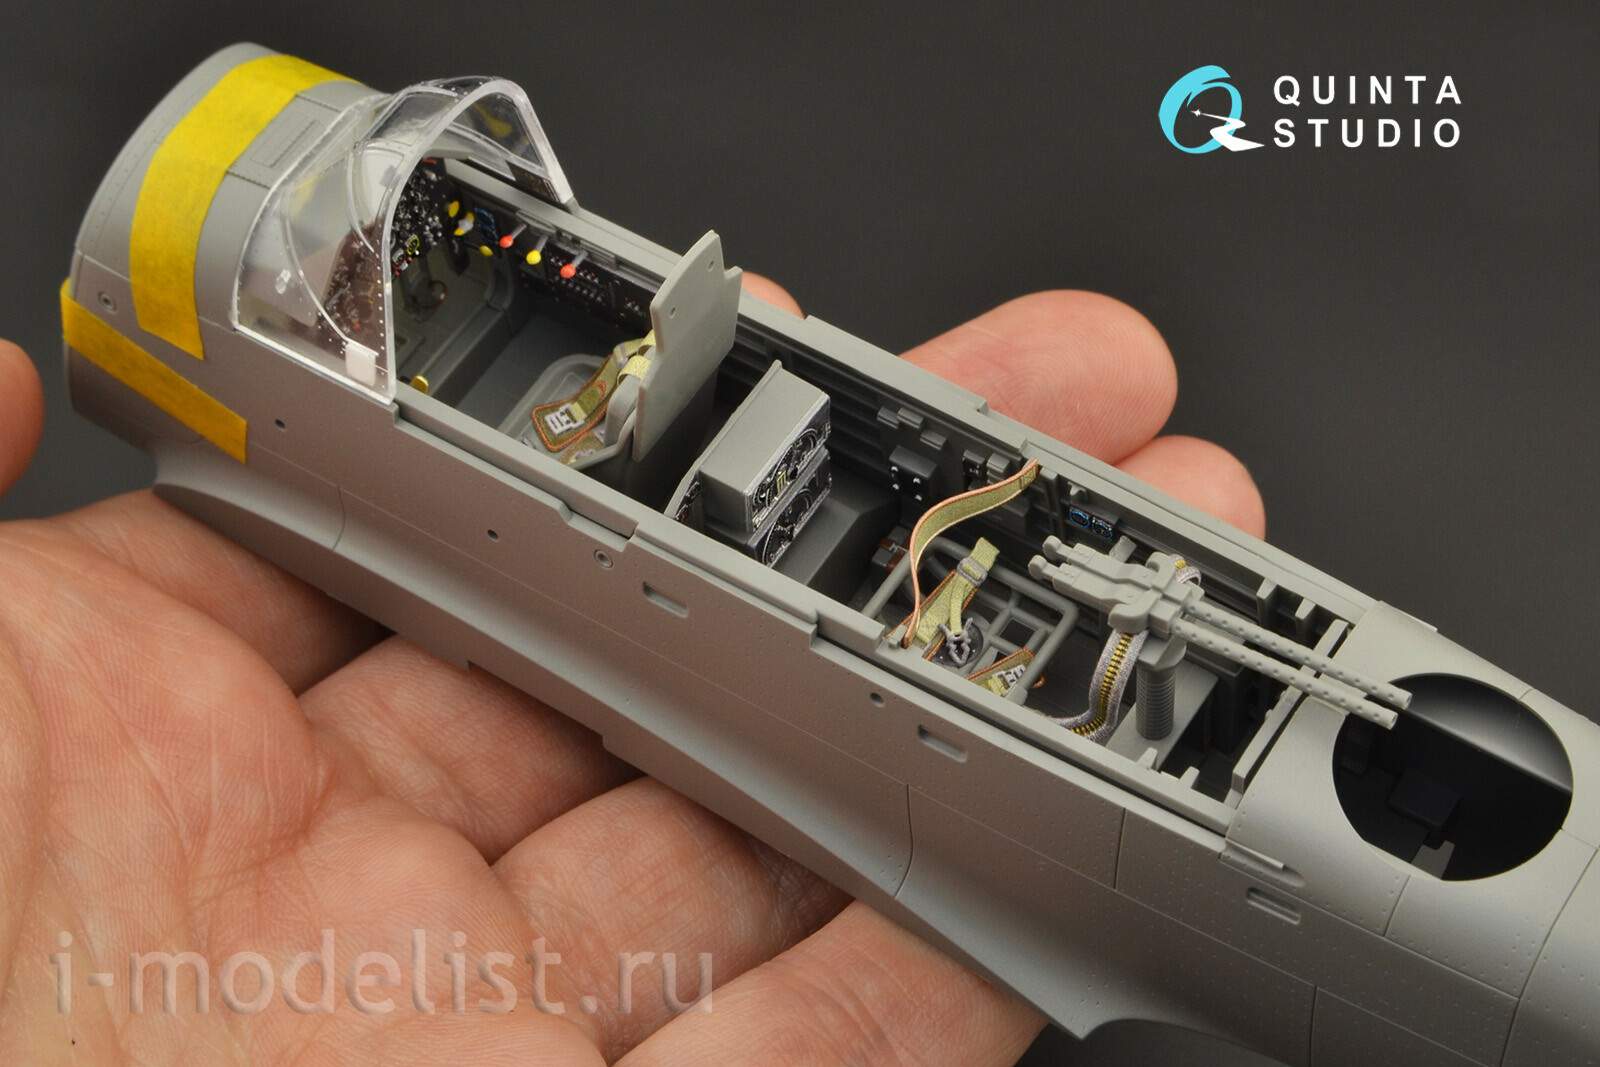 QD35054 Quinta Studio 1/35 3D Decal of the cabin interior of the Ju 87G (Border Model)